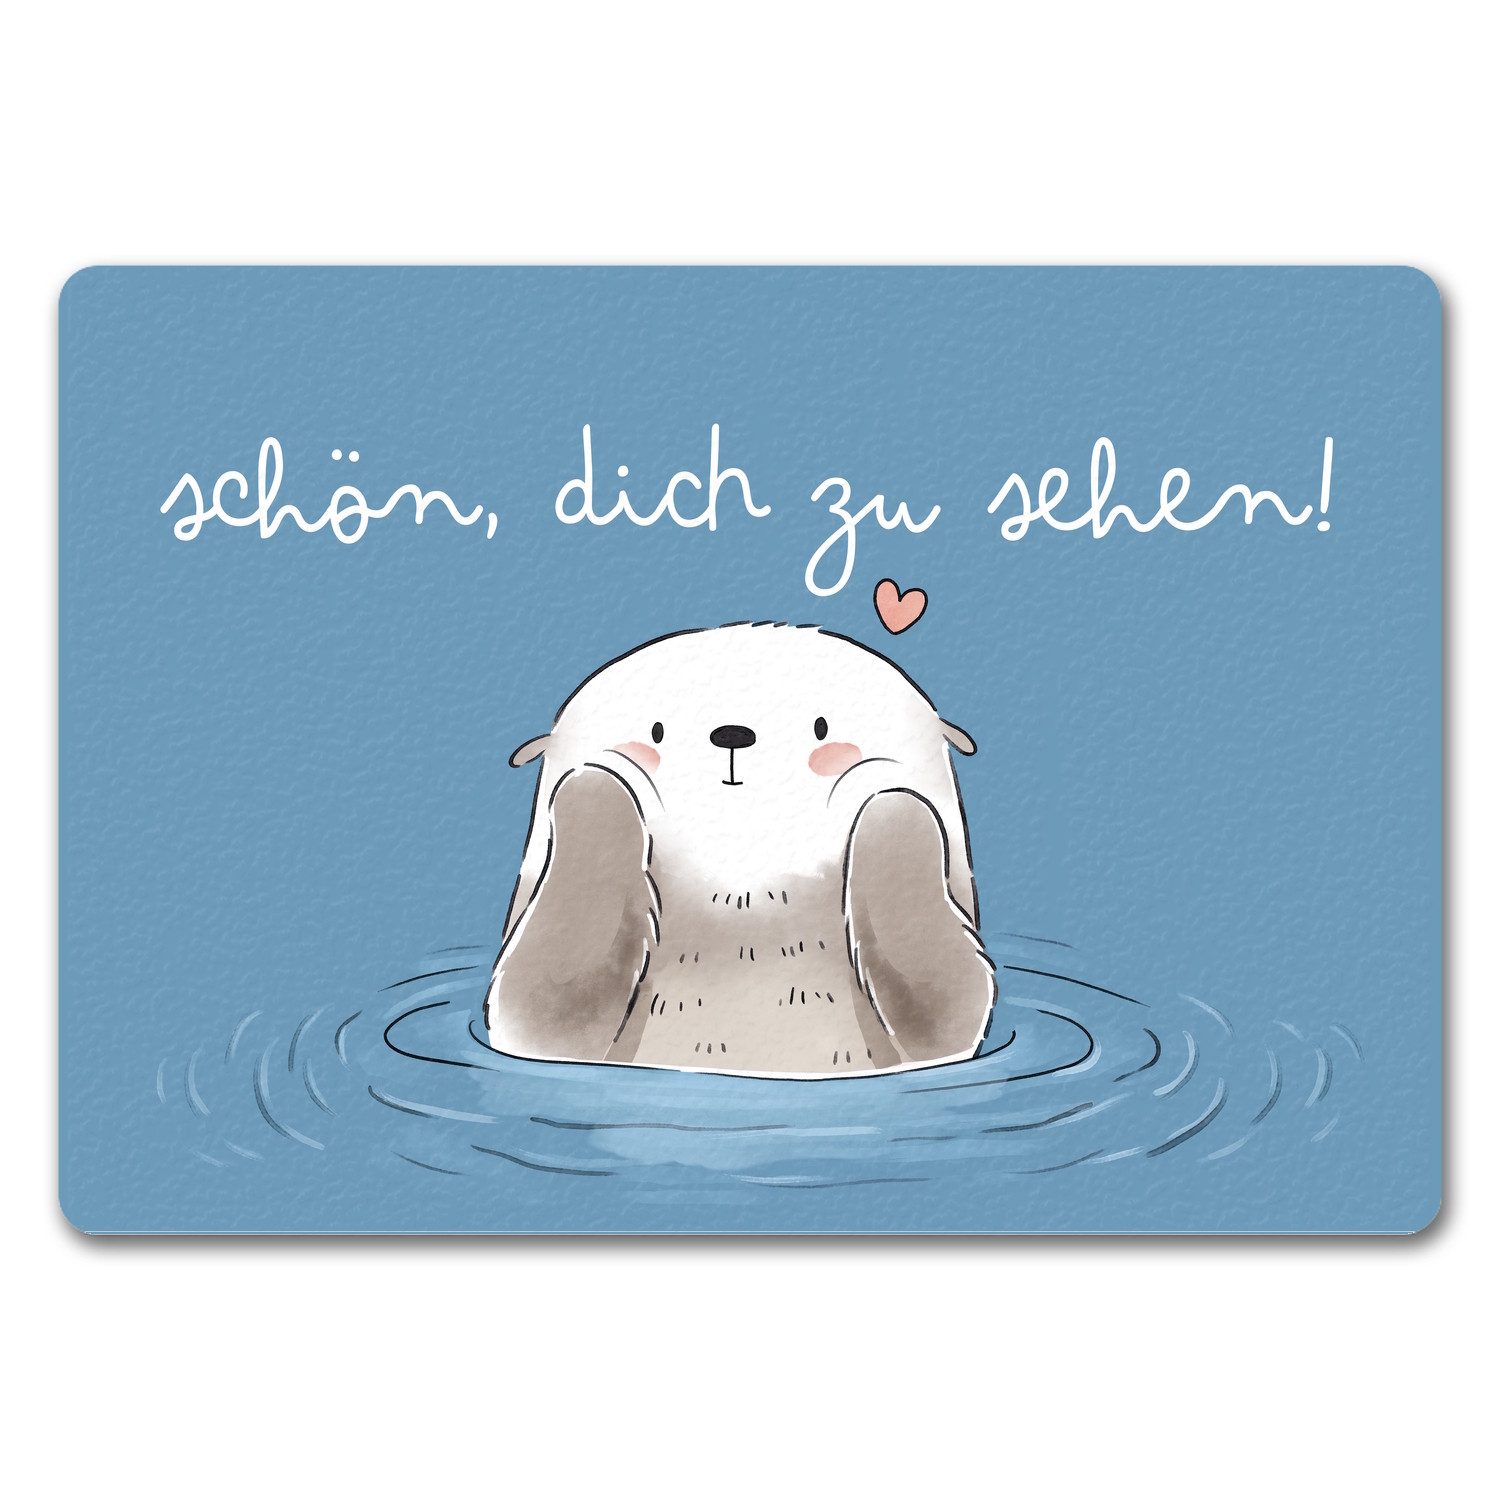 Fußmatte Otter Fußmatte in 35x50 cm ohne Rand mit Spruch Schön dich zu sehen, speecheese